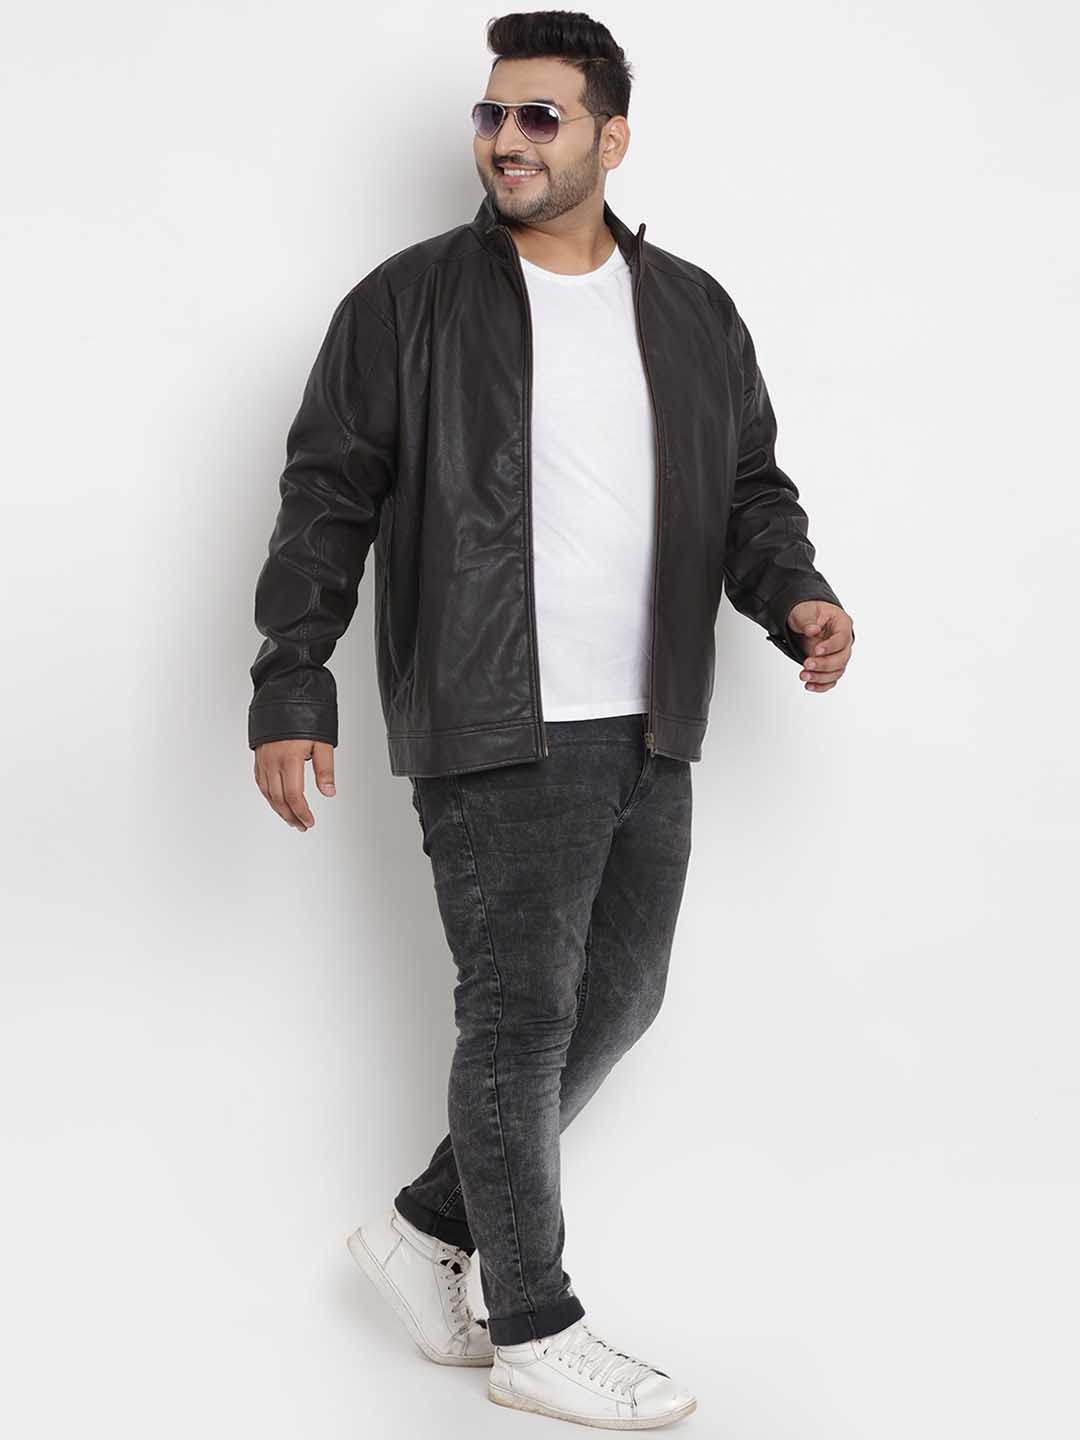 Plus Size Mens Jackets | Big Mens Coats | TOG24